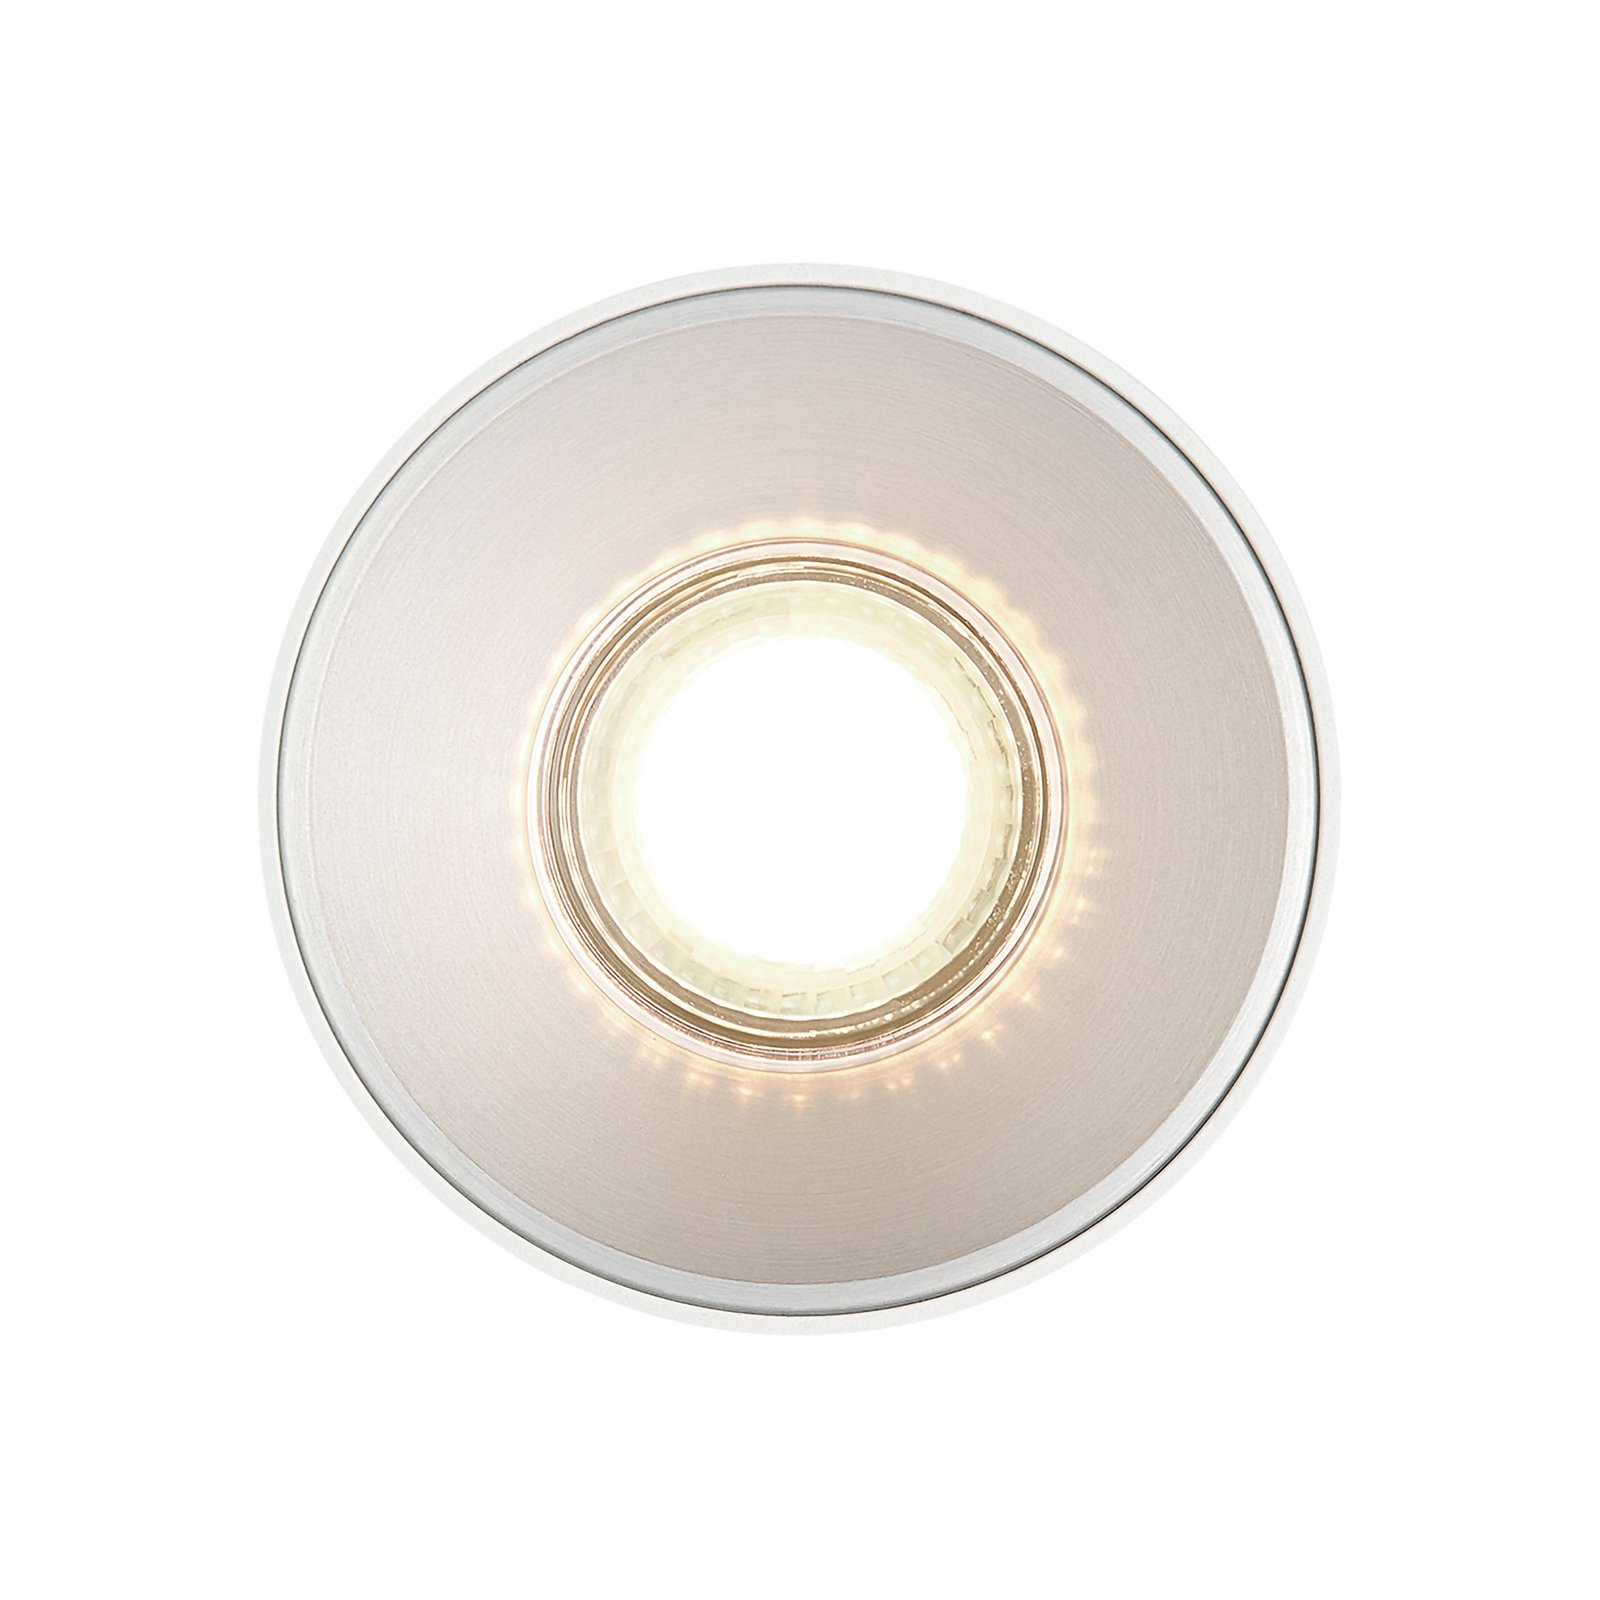 Downlight Jarra, GU10, 1 luz, metal, blanco